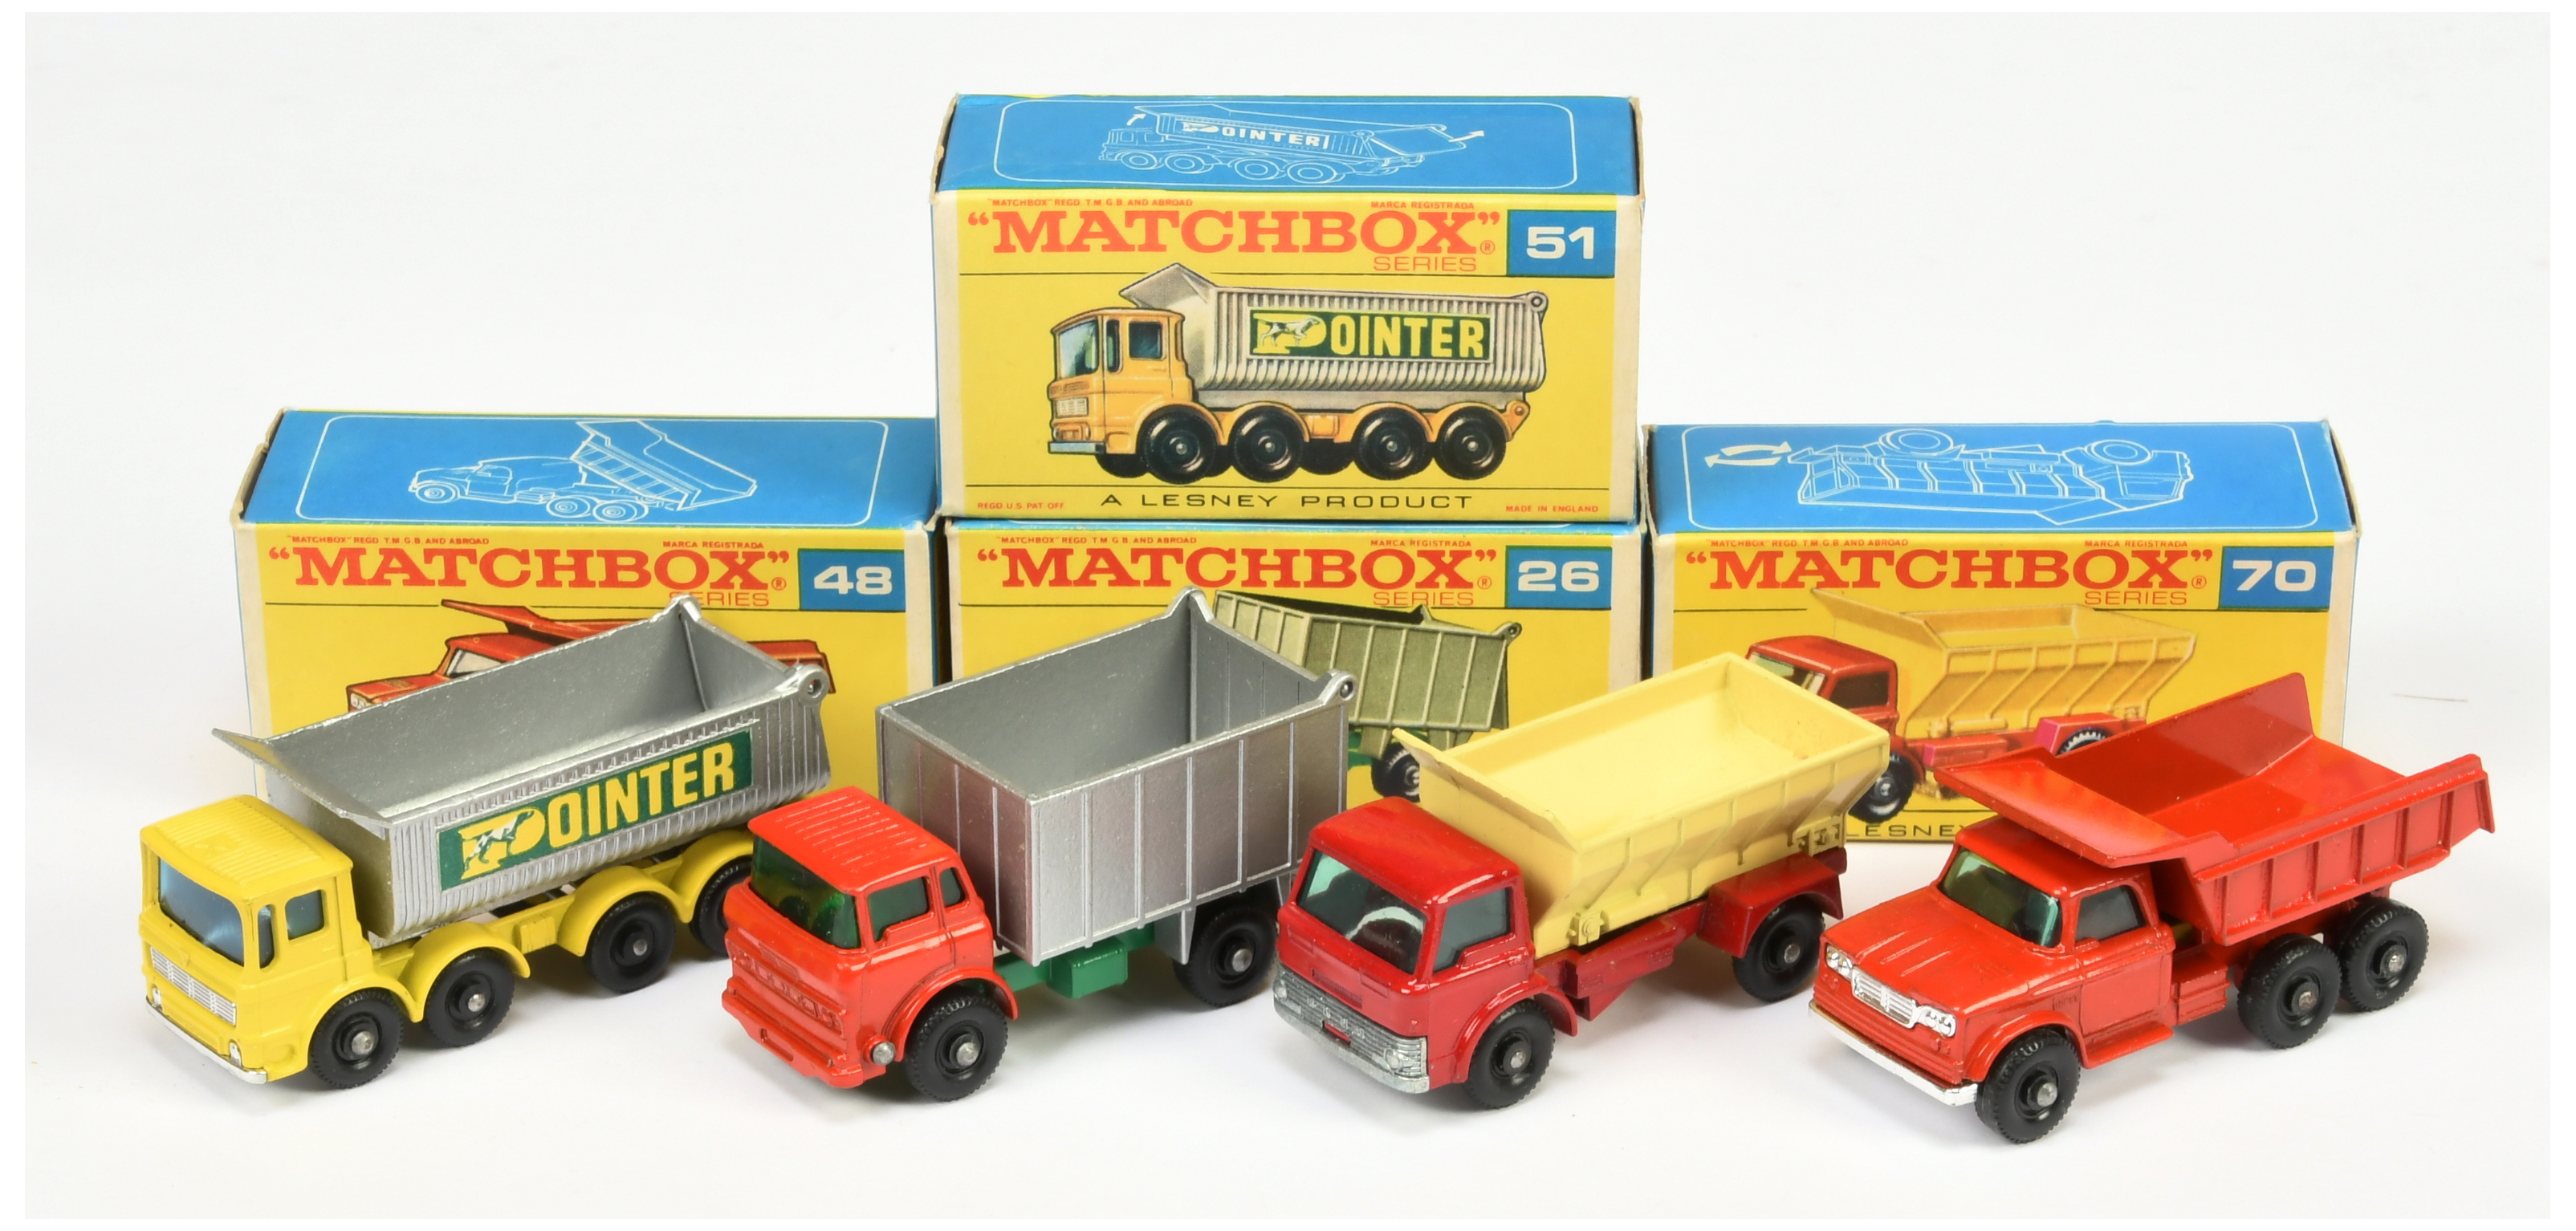 Matchbox Regular Wheels group (1) 26c GMC Tipper Truck  (2) 48c Dodge Dumper Truck - short silver...